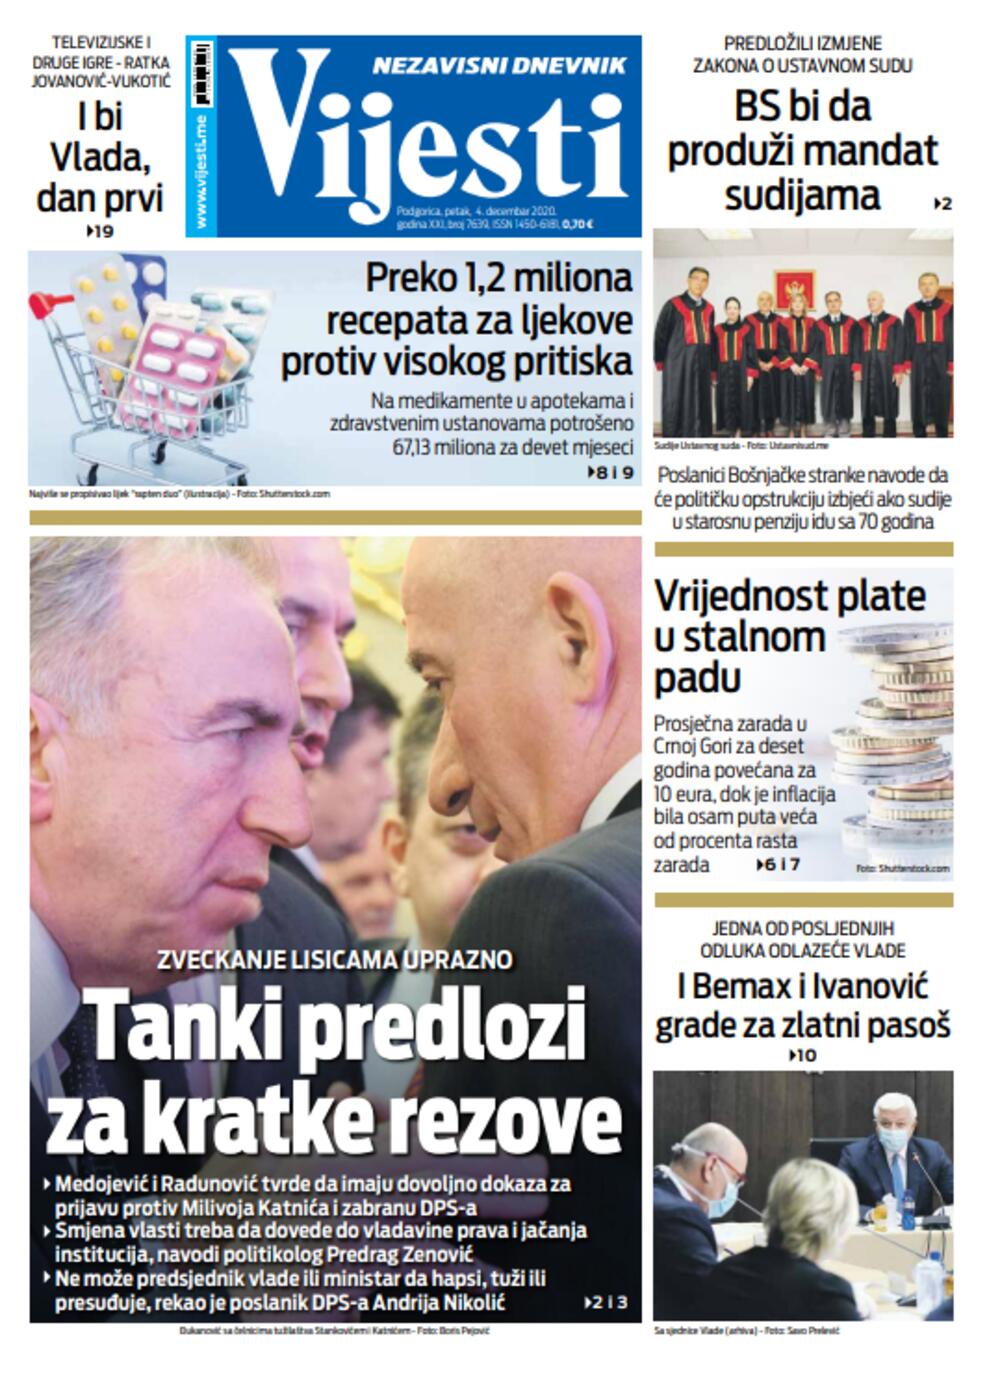 Naslovna strana "Vijesti" za četvrti decembar, Foto: Vijesti